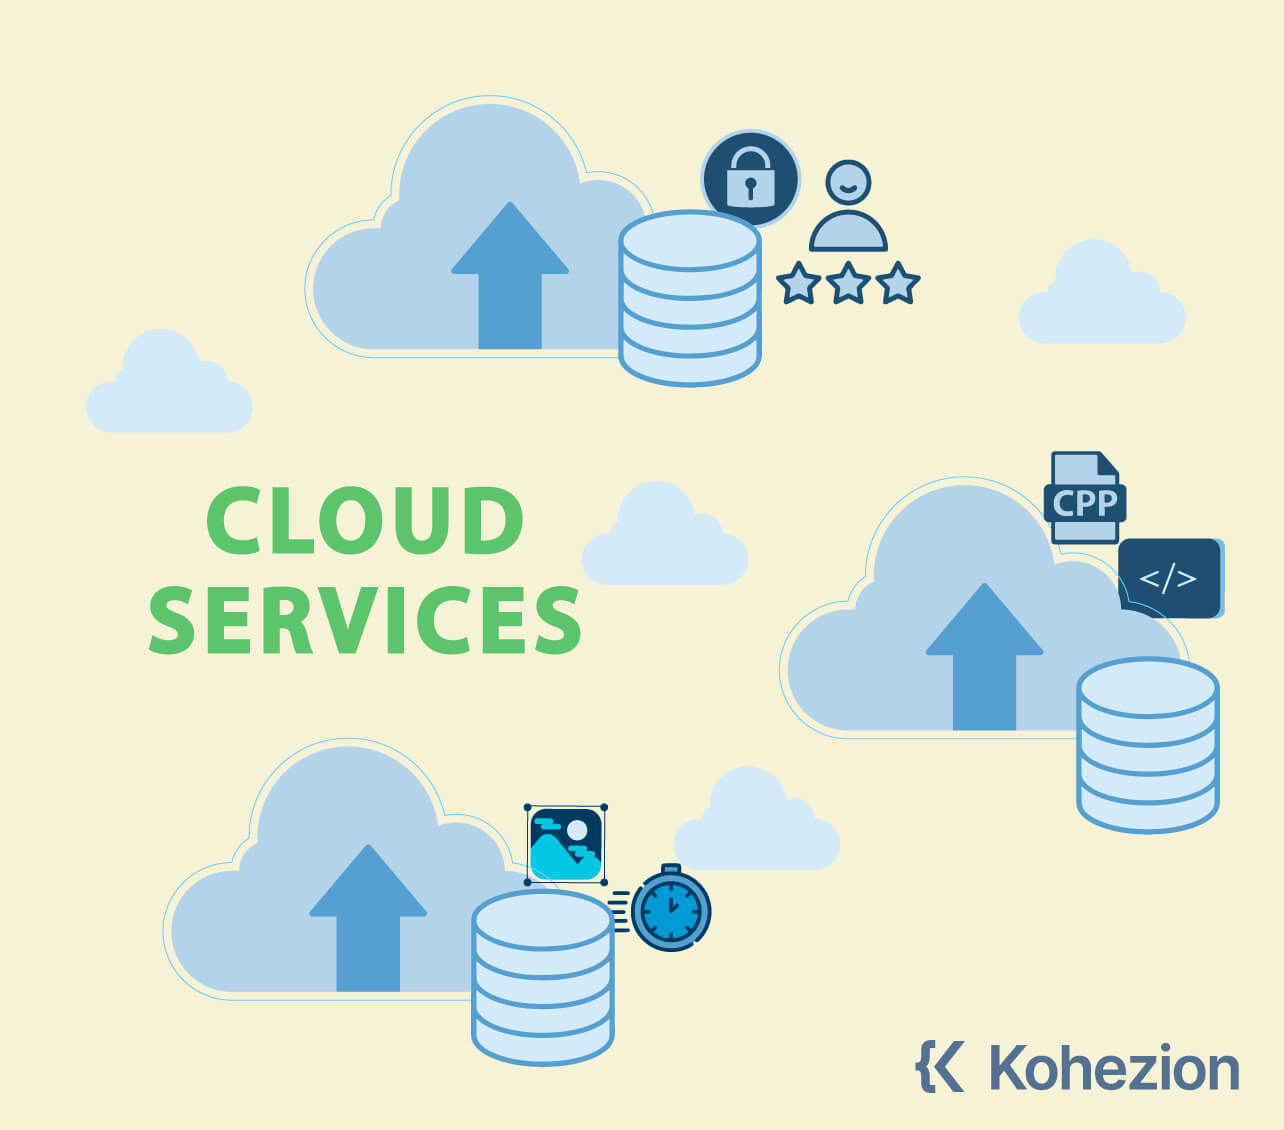 Cloud-Services